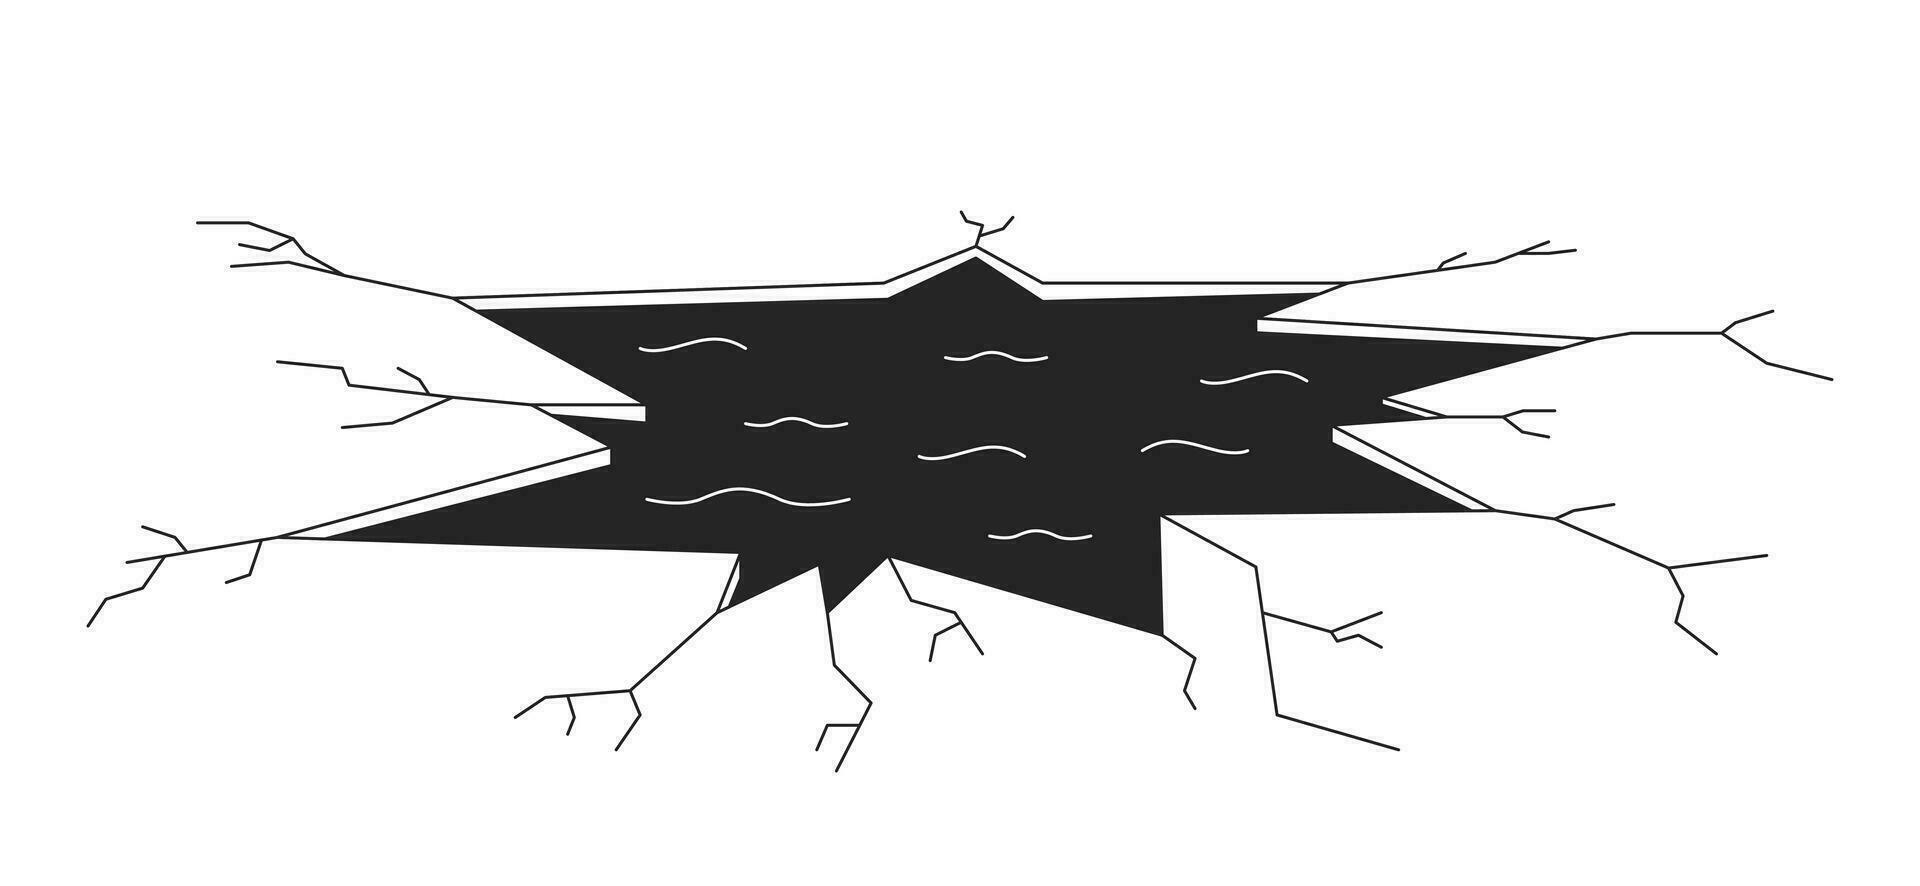 roto hielo agujero negro y blanco 2d línea dibujos animados objeto. congelado lago hielo grietas primavera, redondo hueco aislado vector contorno artículo. peligroso sitio invierno monocromo plano Mancha ilustración